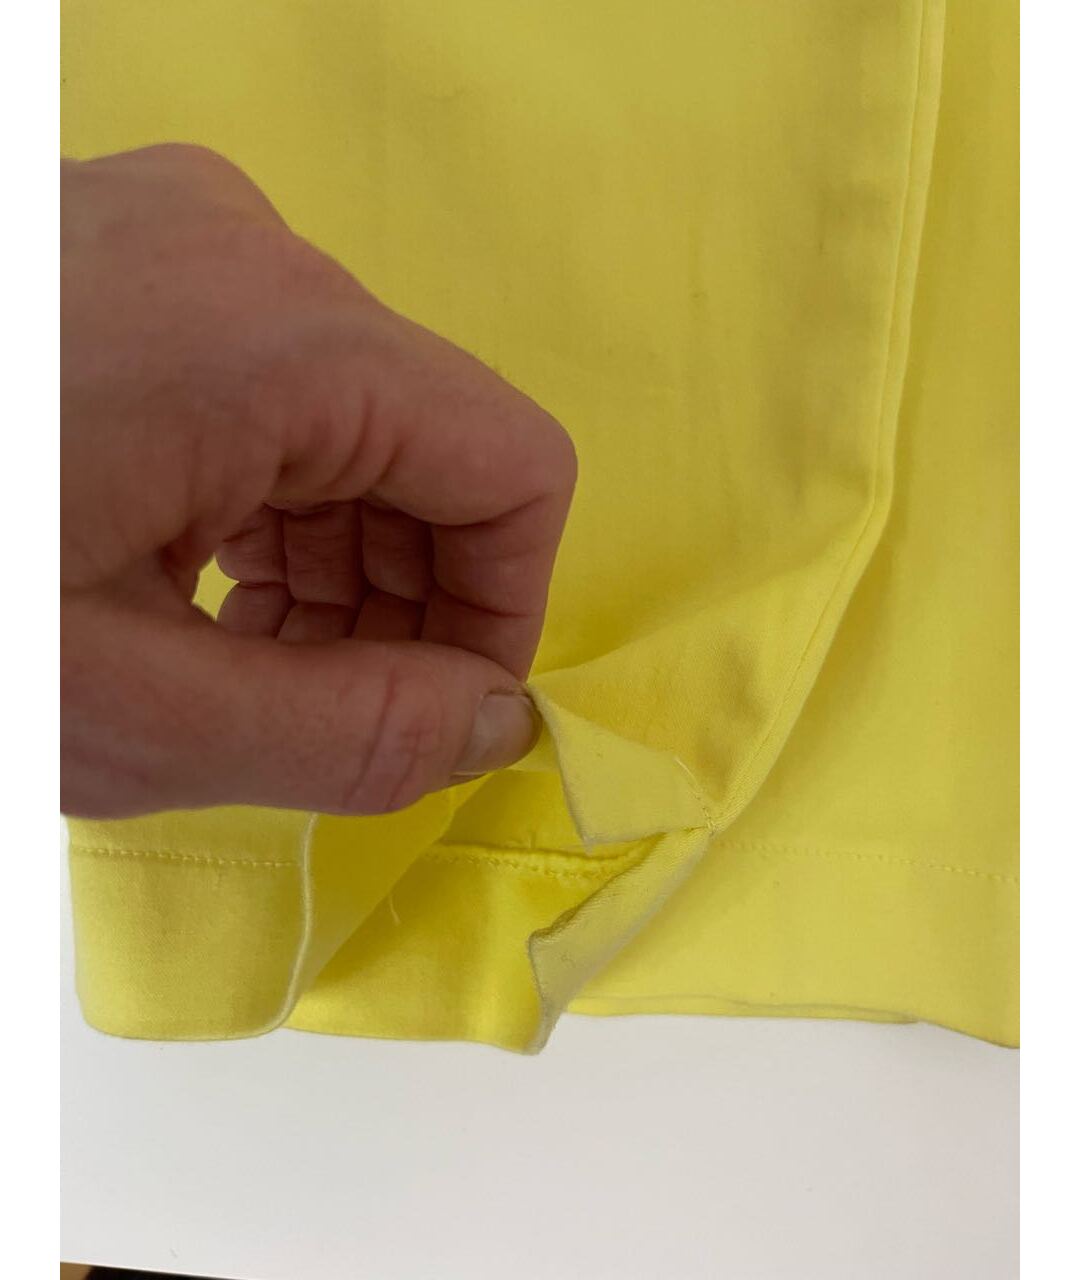 MARC CAIN Желтые хлопко-эластановые прямые брюки, фото 4